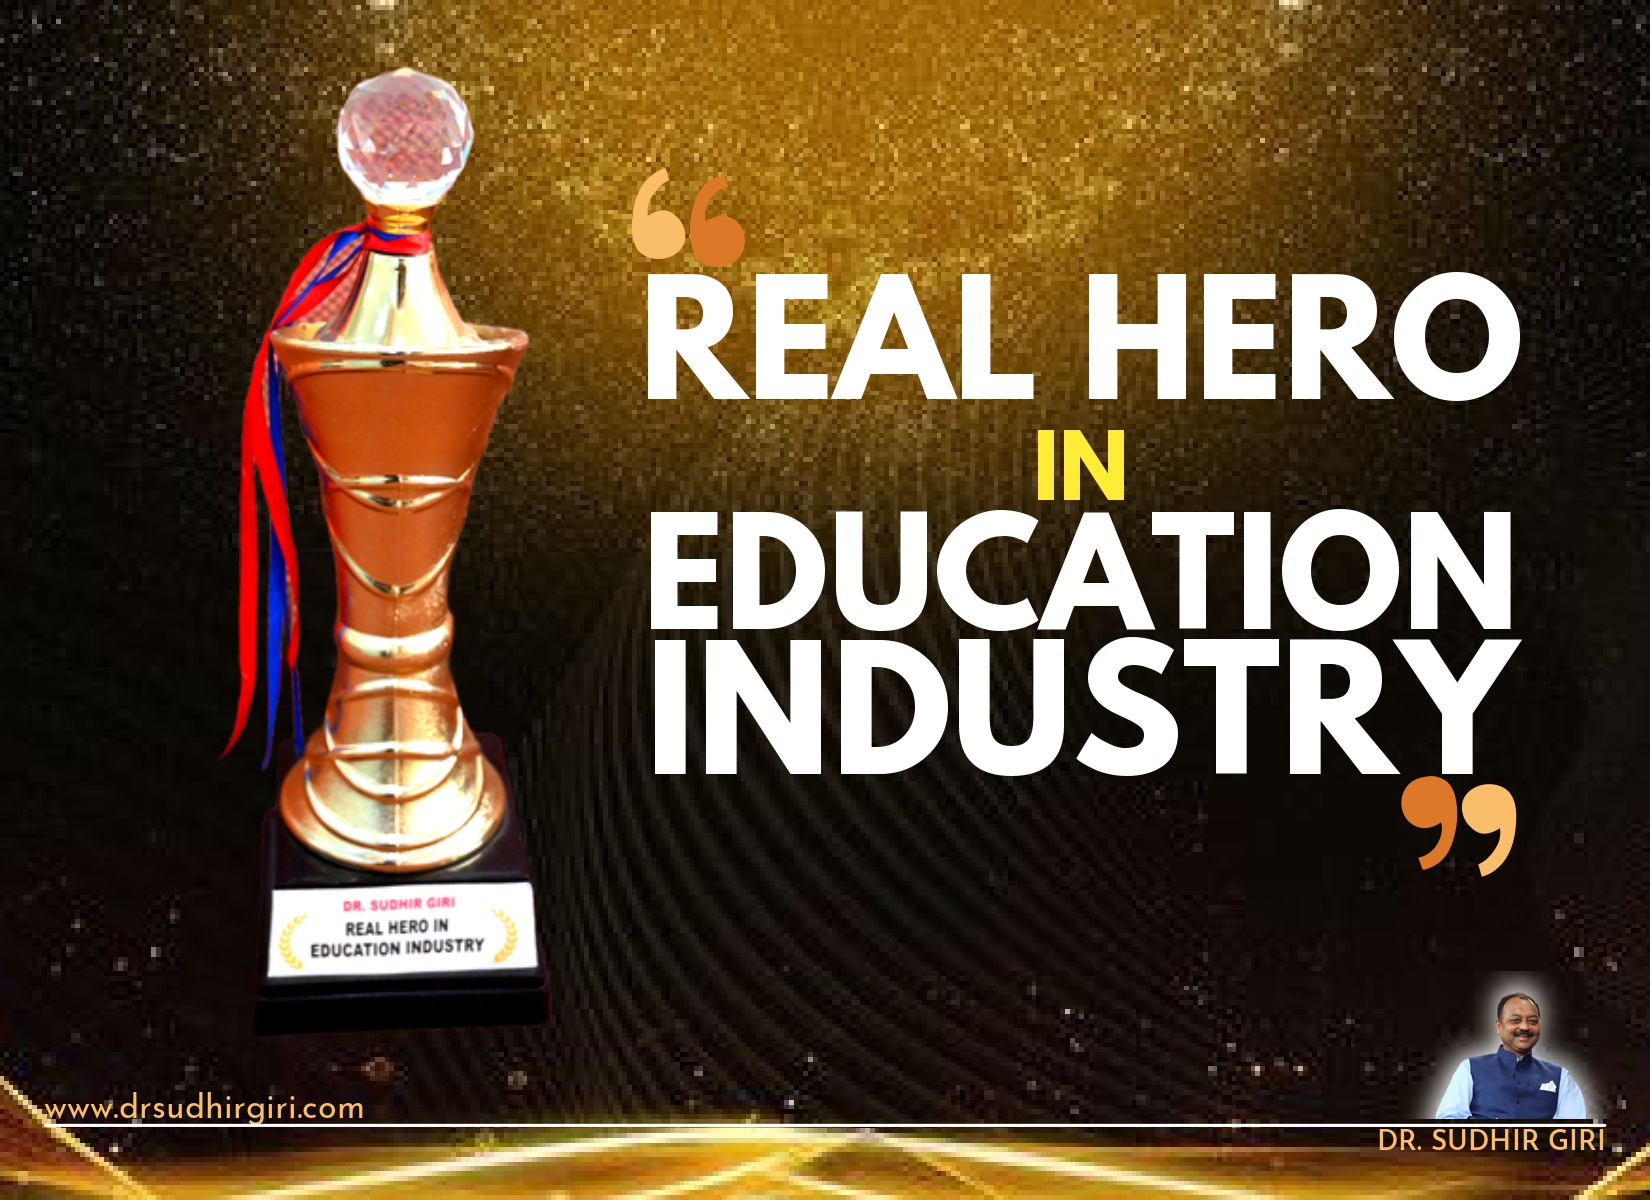 Dr Sudhir Giri - Real hero in education industry